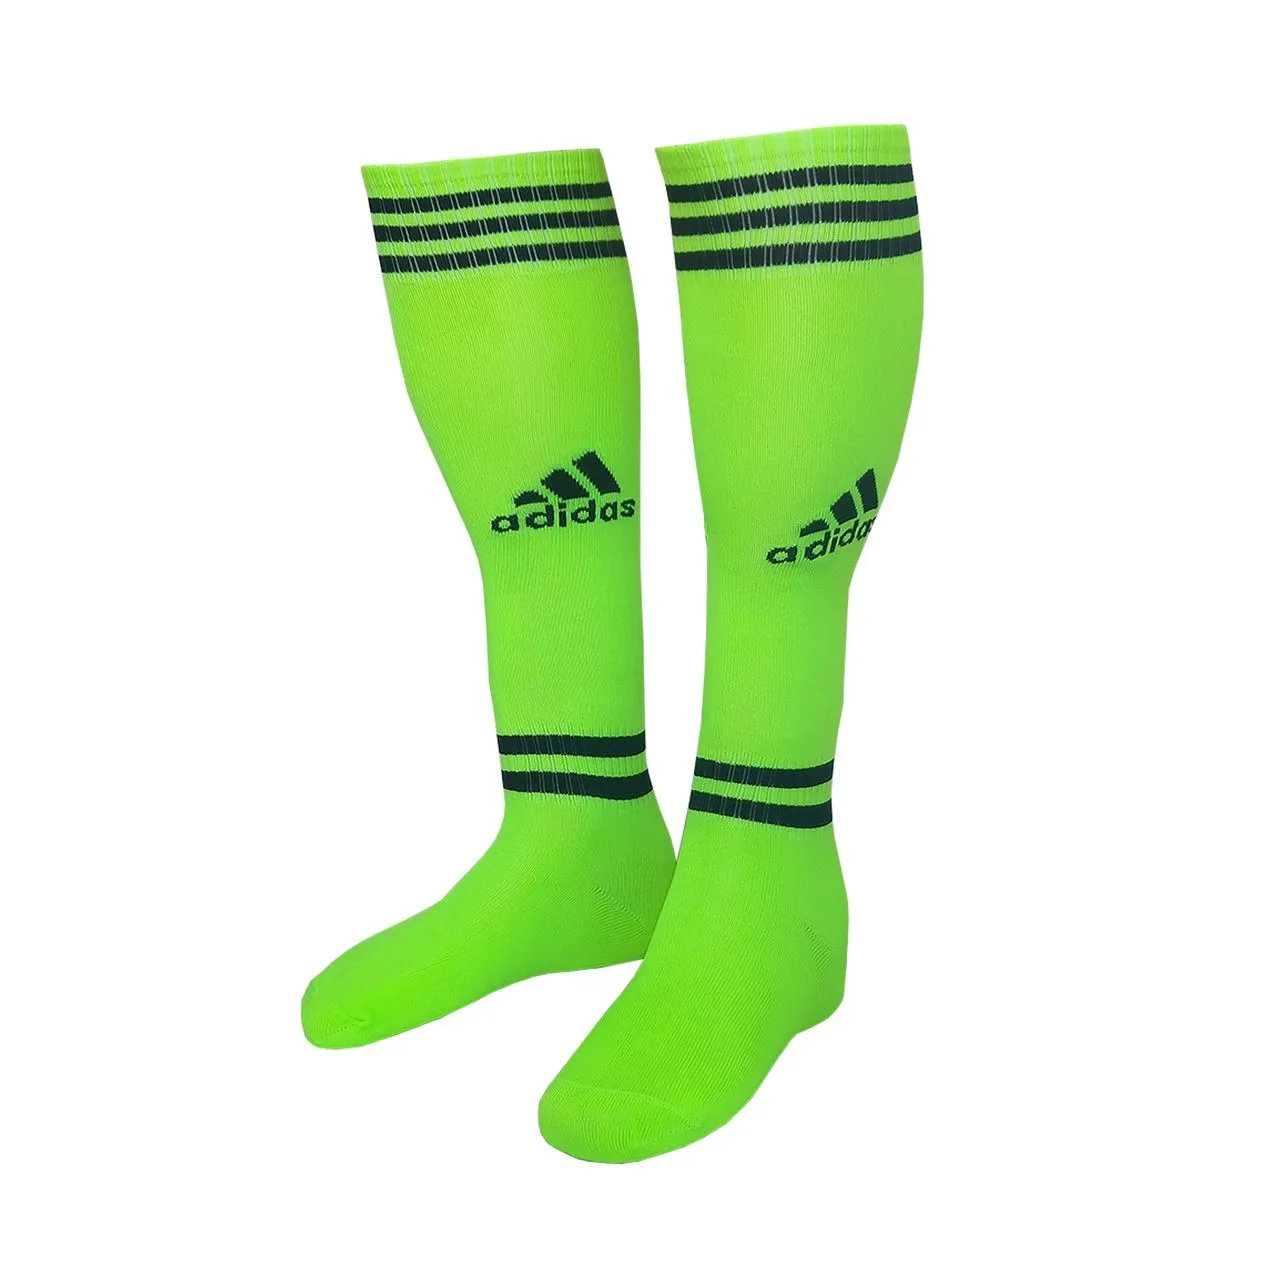 Getry futbol'nyye Adidas Sport Sock#1